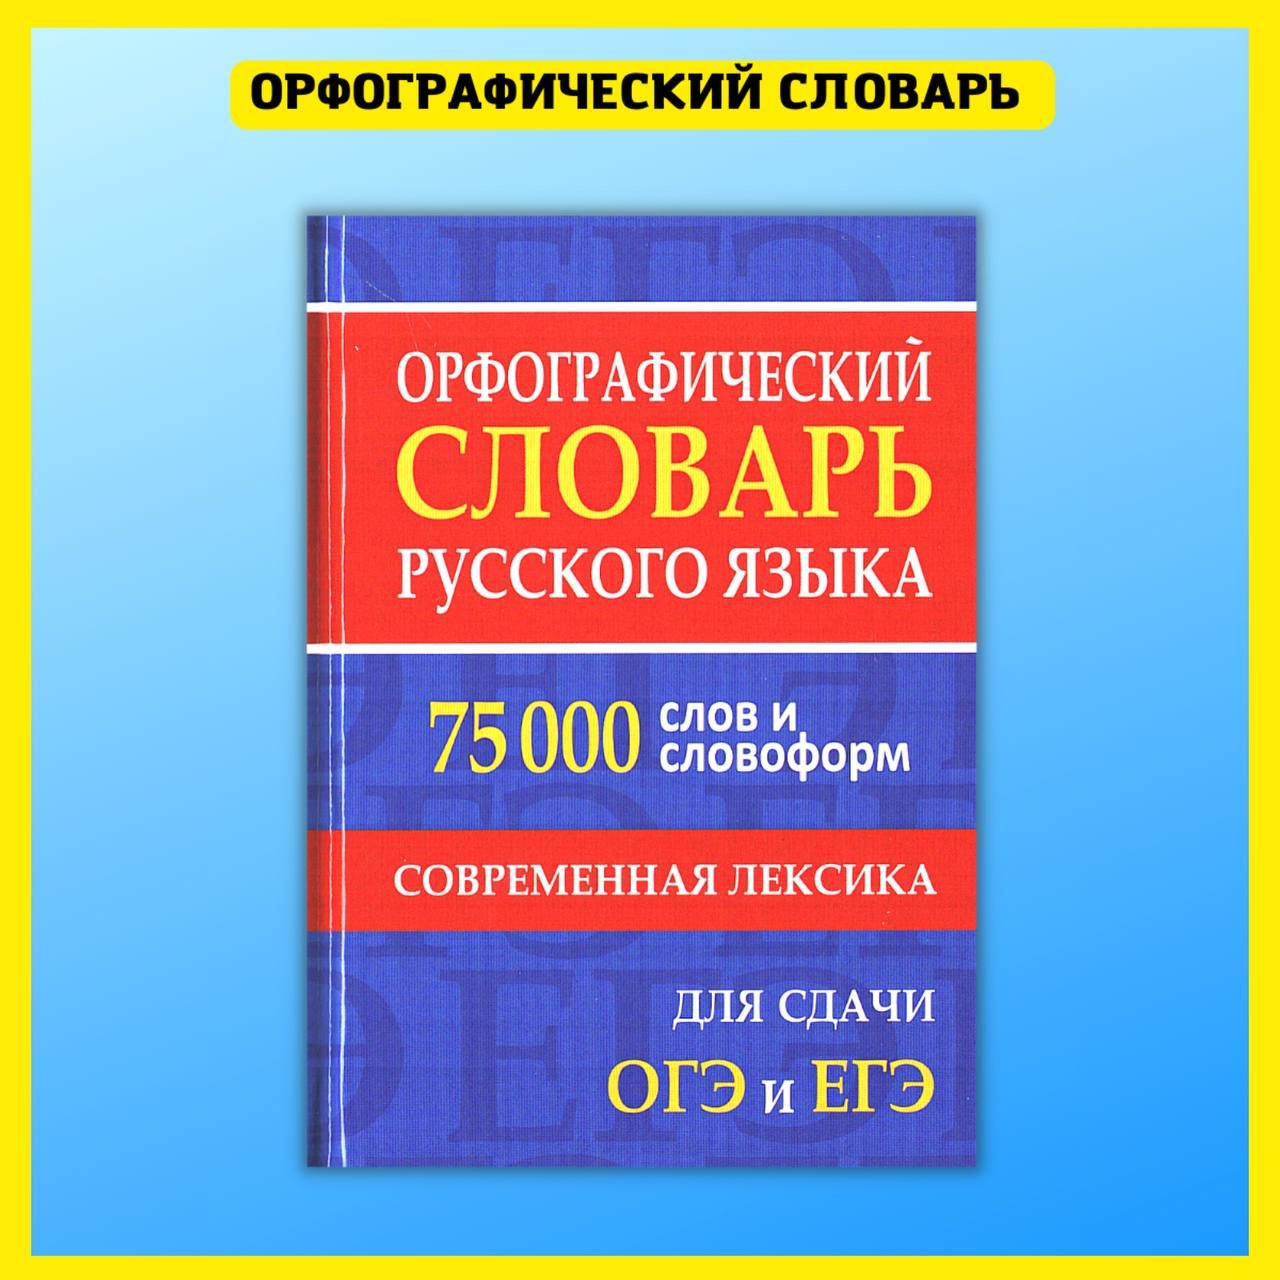 Орфографический словарь русского языка, 110000 слов. 1957 год, Москва.